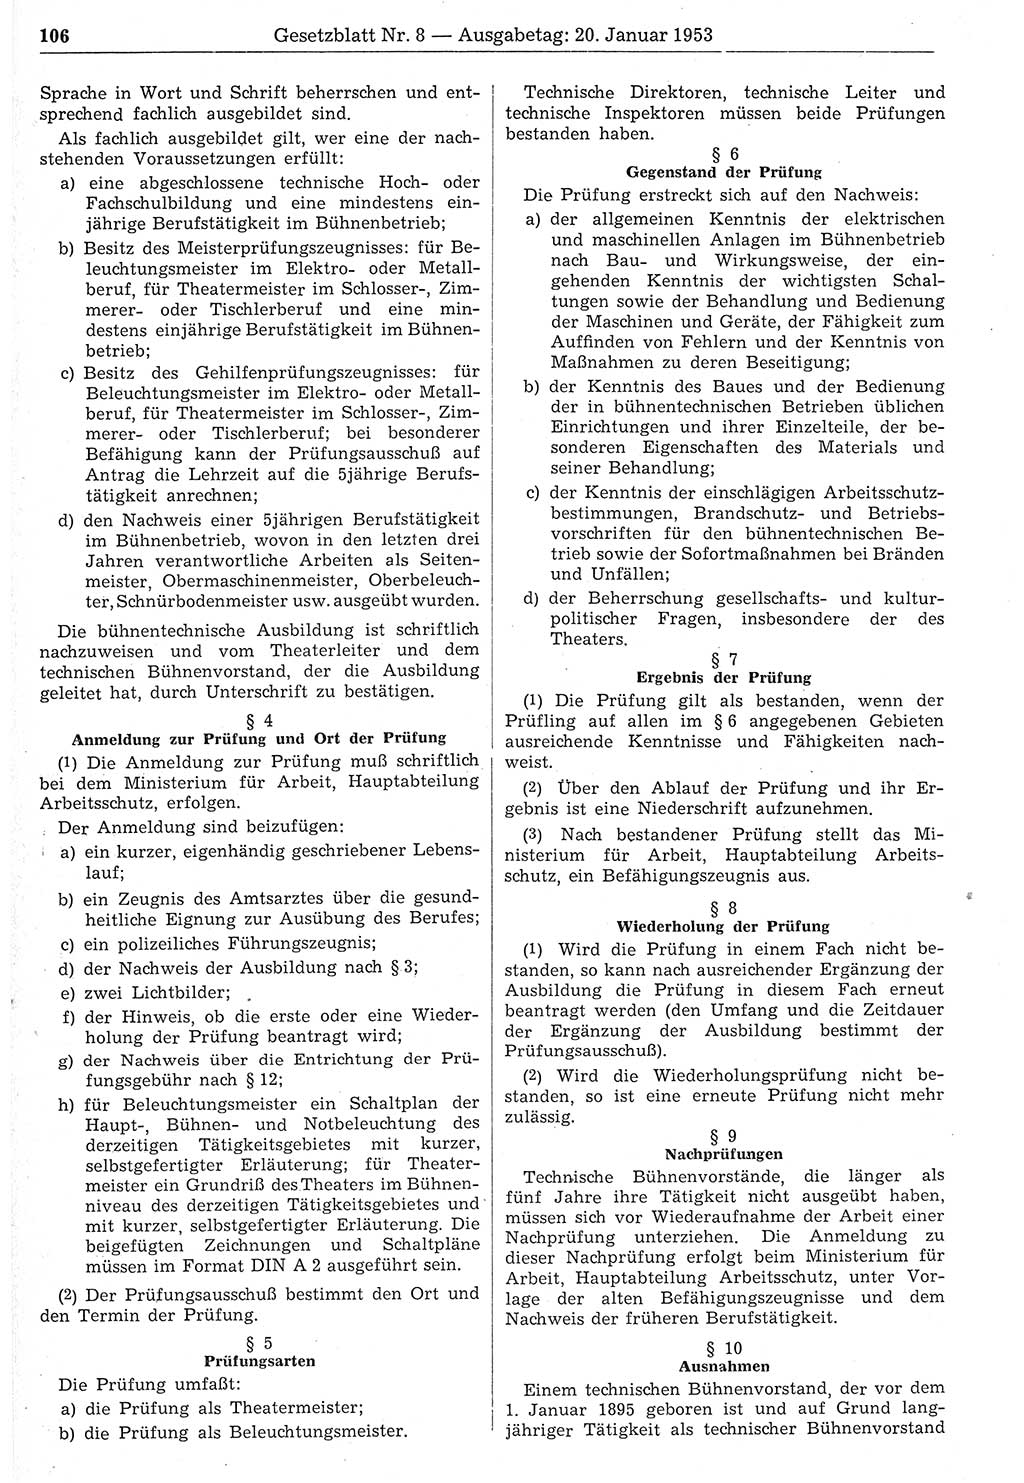 Gesetzblatt (GBl.) der Deutschen Demokratischen Republik (DDR) 1953, Seite 106 (GBl. DDR 1953, S. 106)